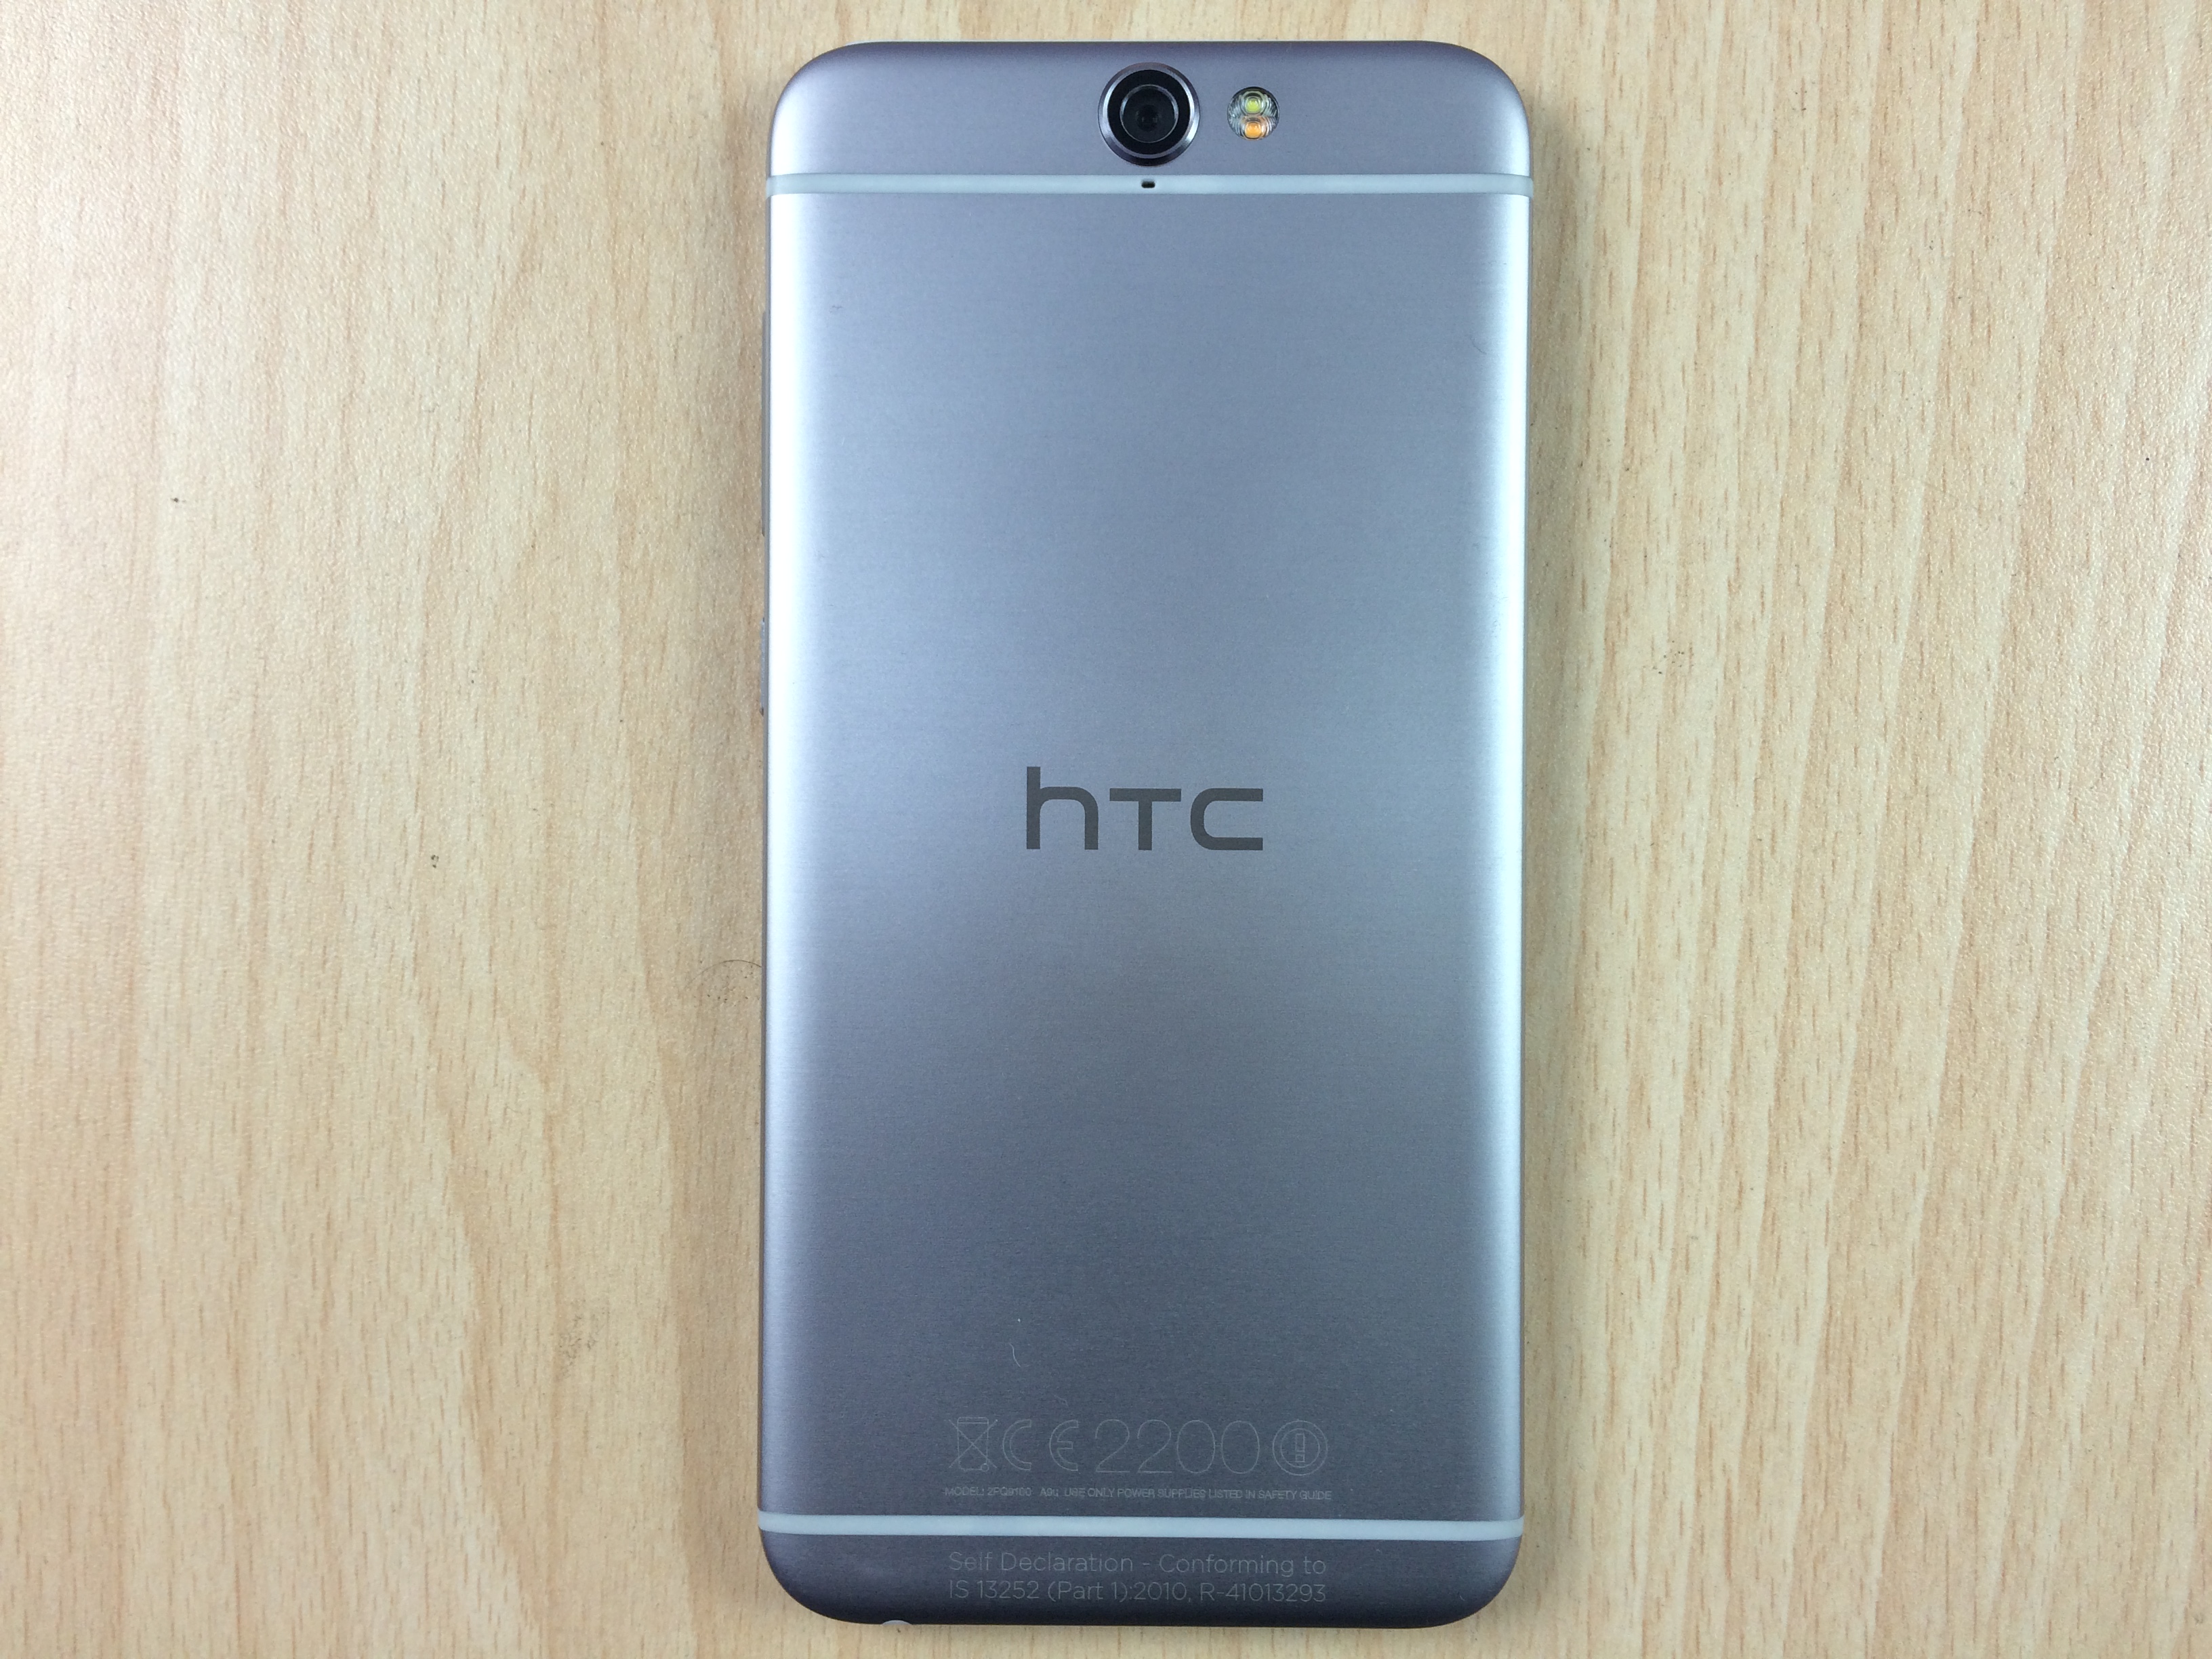 Recenzja aparatu HTC One A9, zdjęcia, próbki wideo